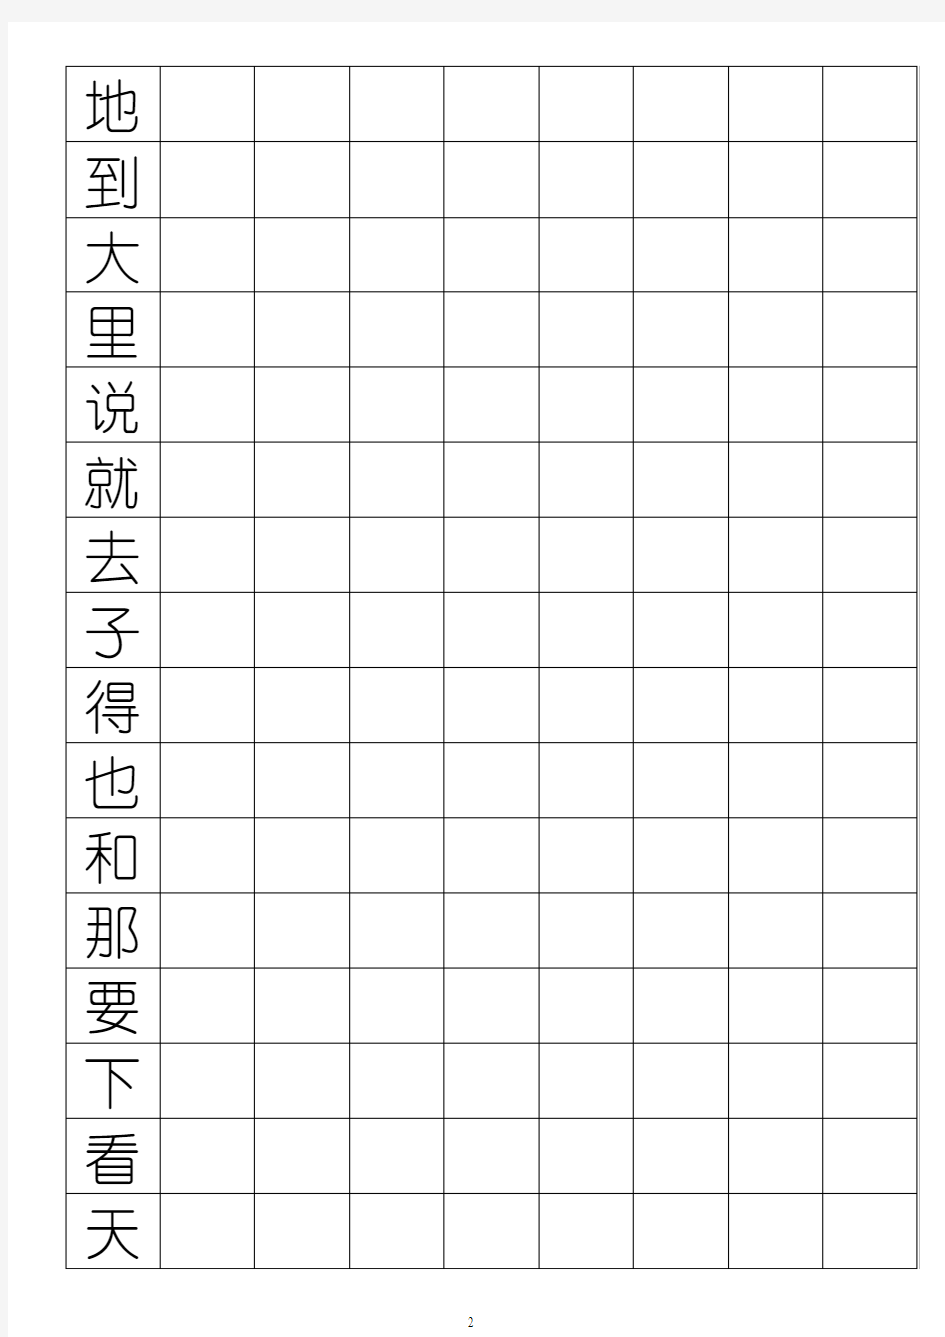 500个高频汉字练字表(方格式、幼圆体)